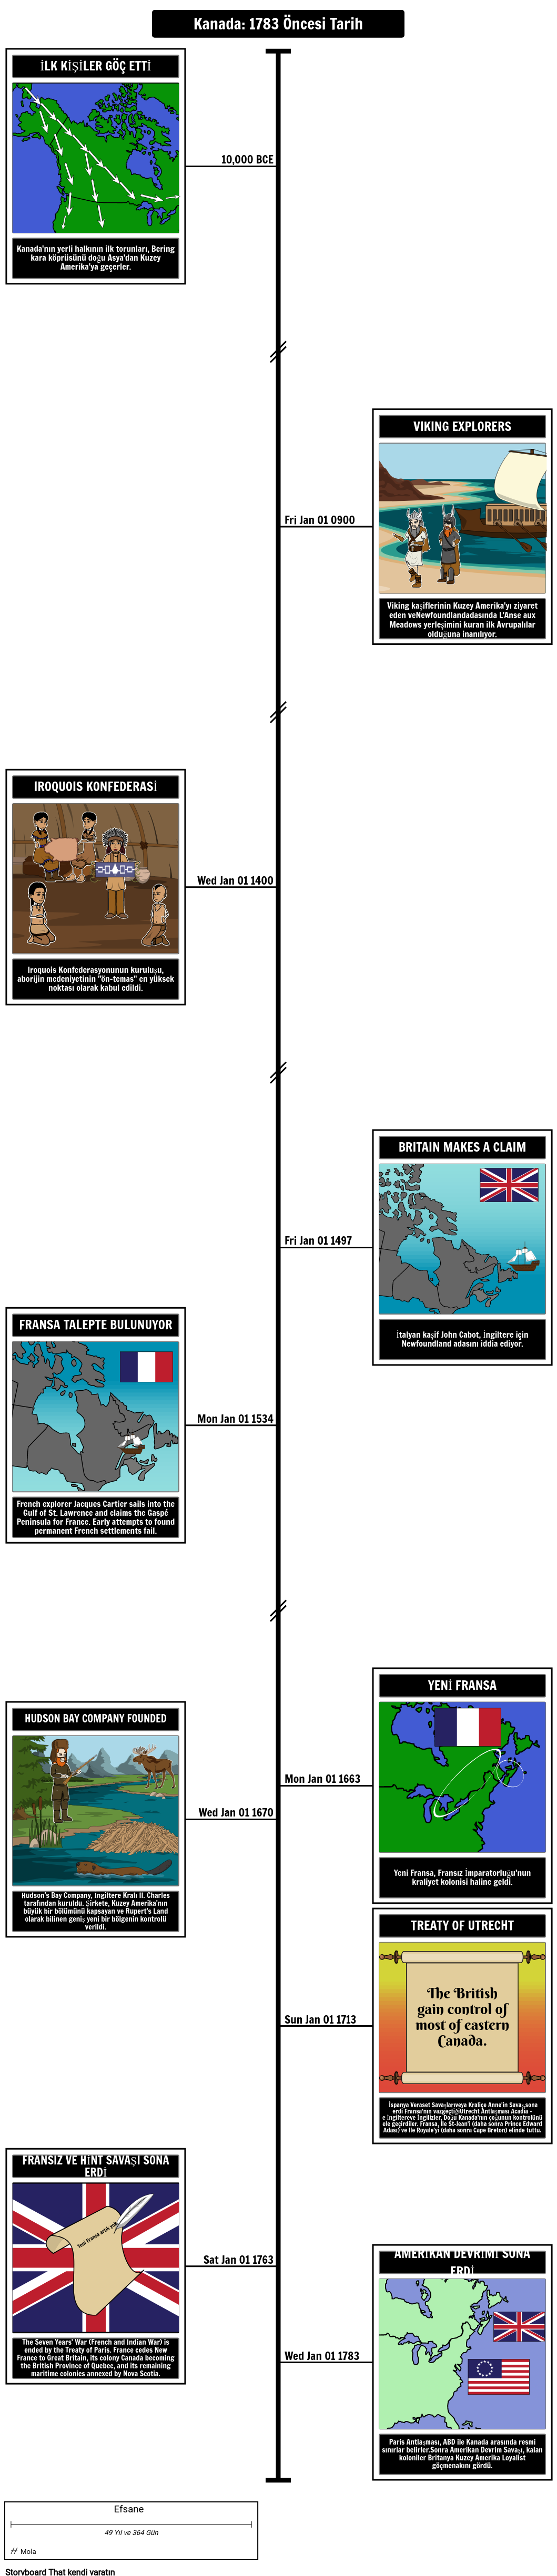 Kanada Tarih Zaman Çizelgesi 1783 Öncesi Tarih